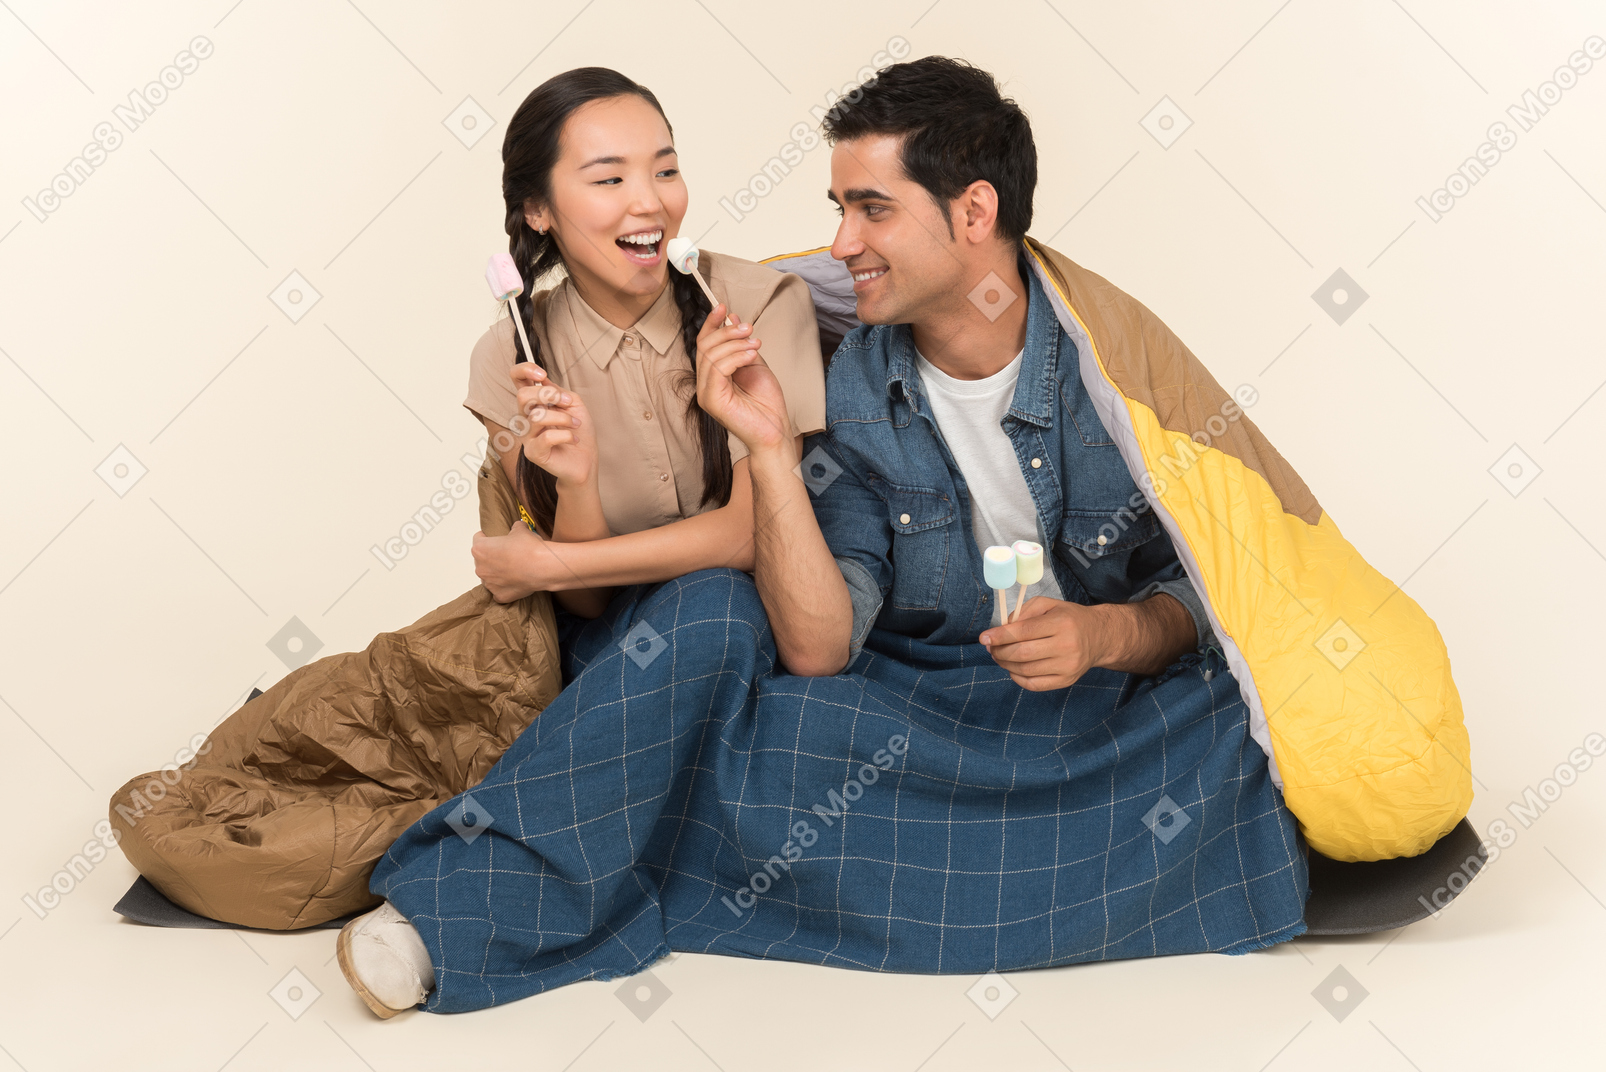 マシュマロを保持している笑っている若い異人種間のカップル